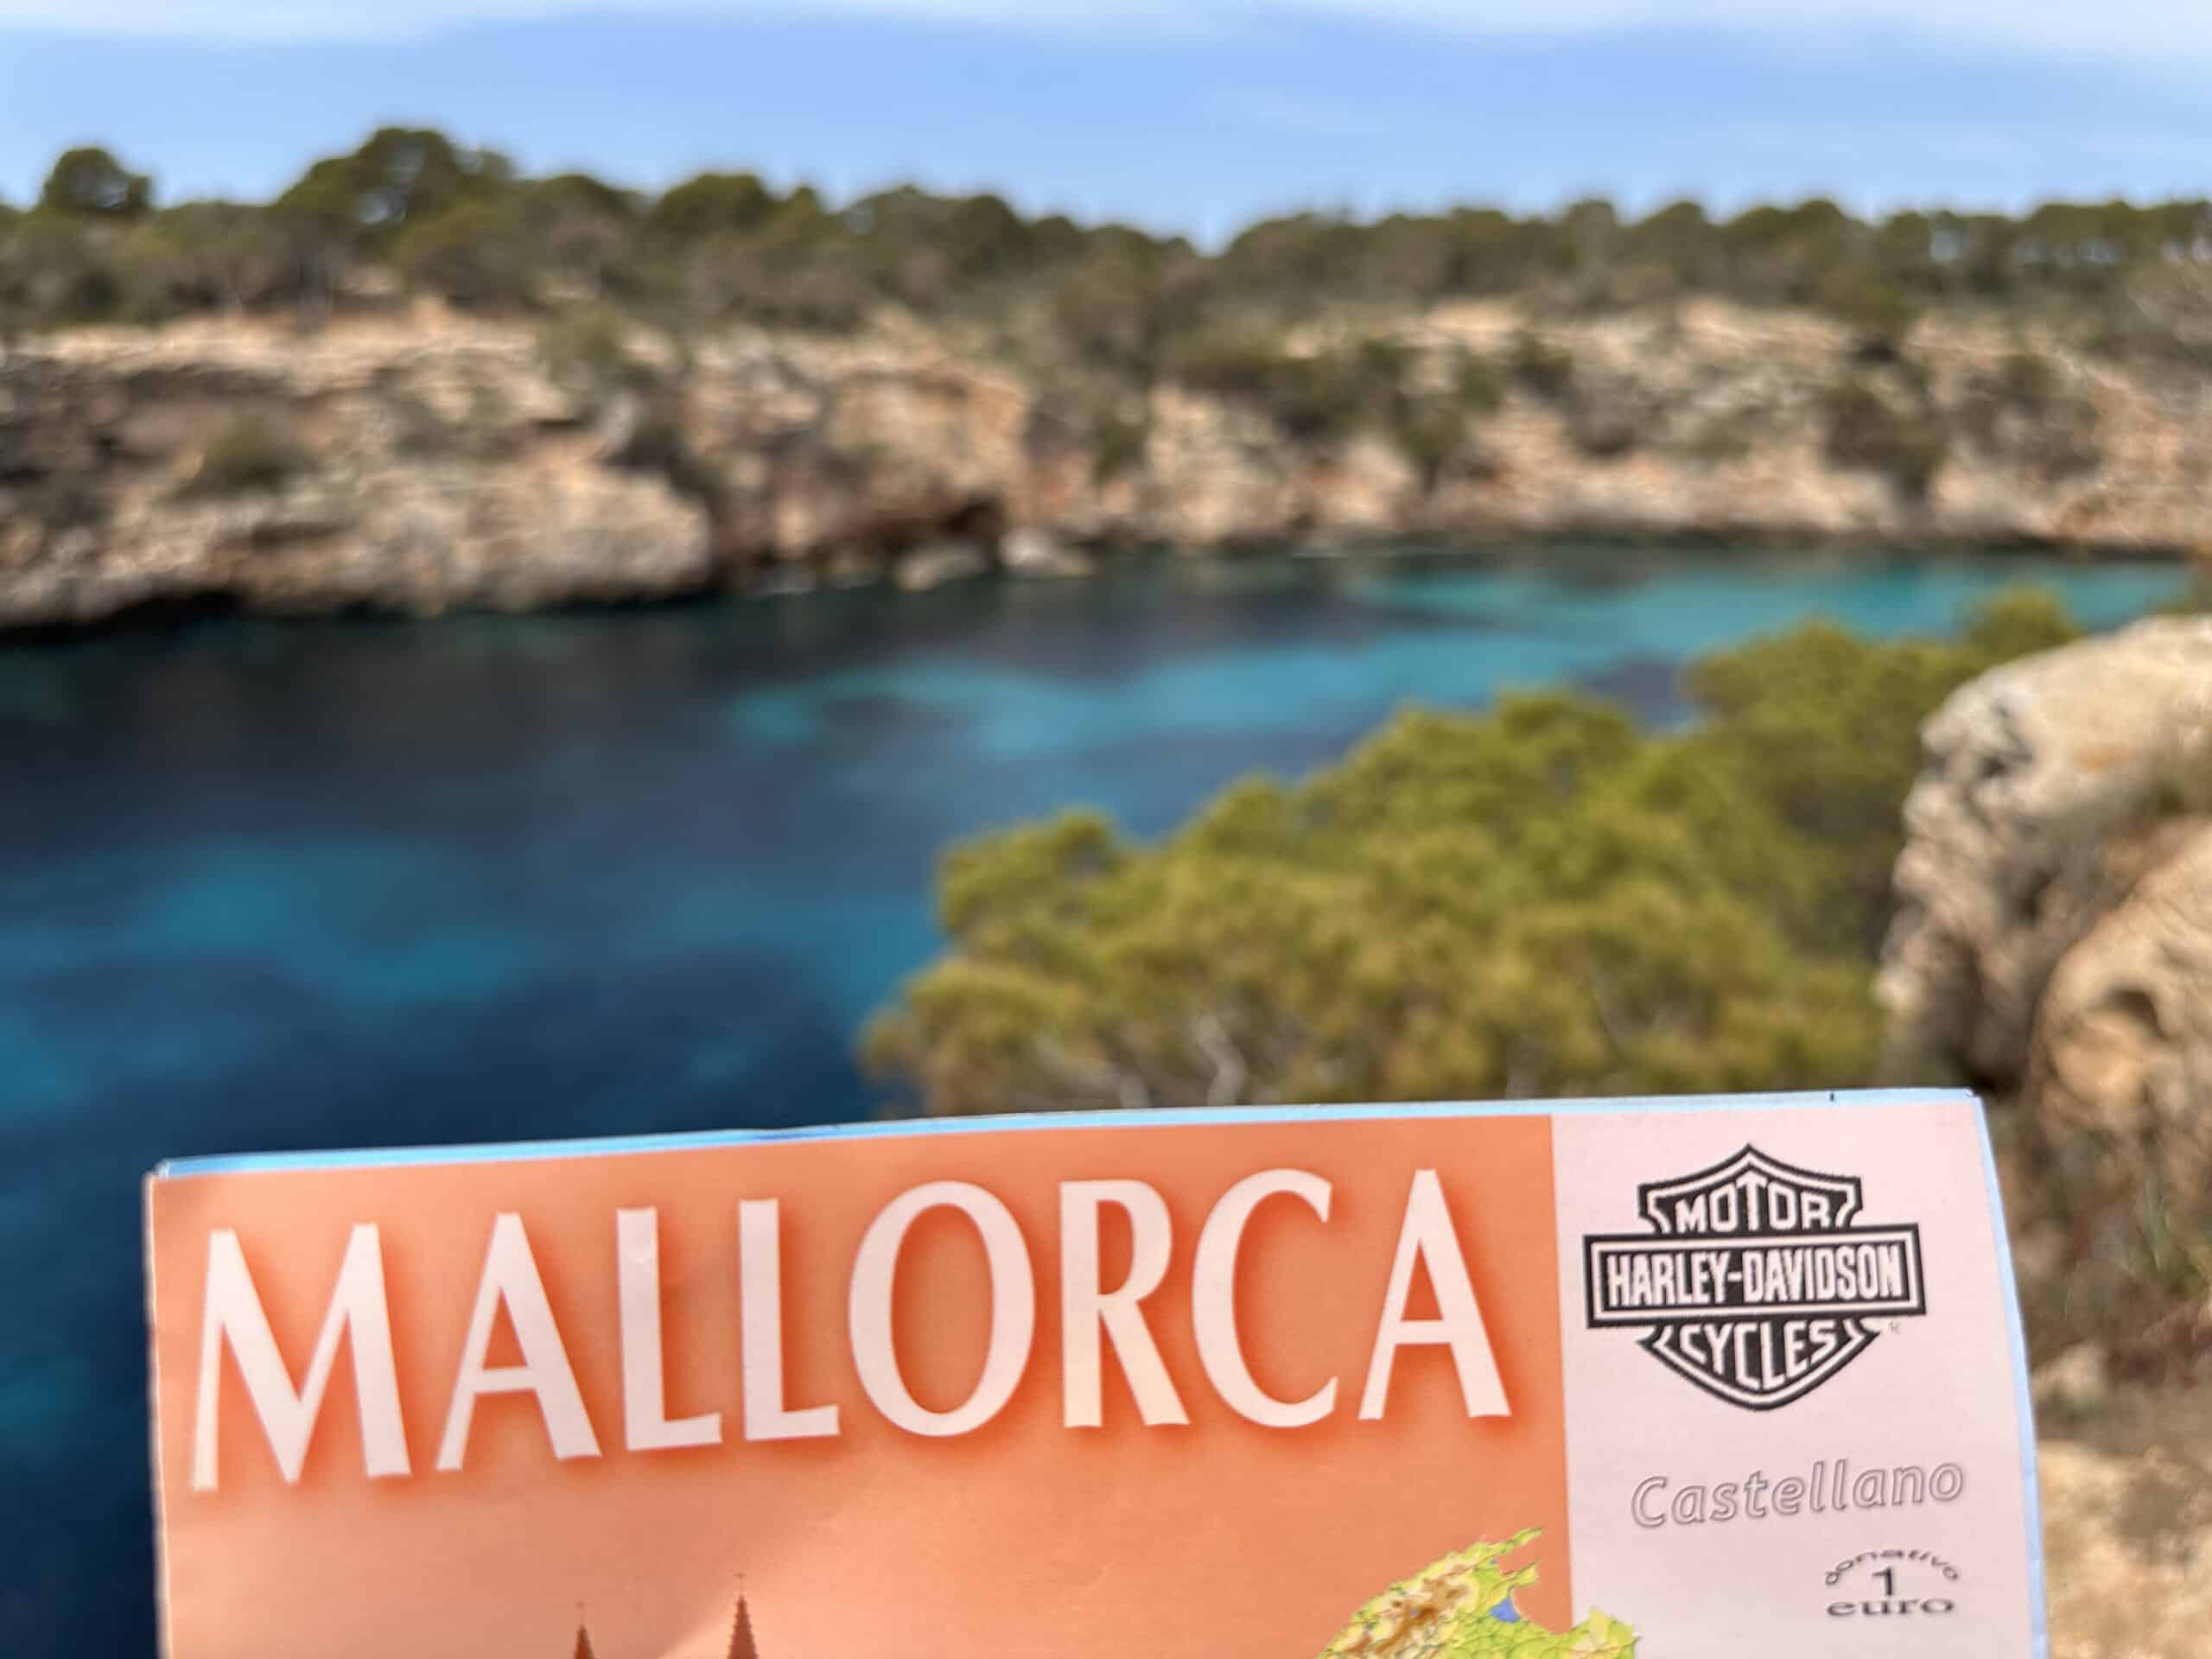 Motorradtour auf Mallorca - Harley Davidson auf Mallorca mieten